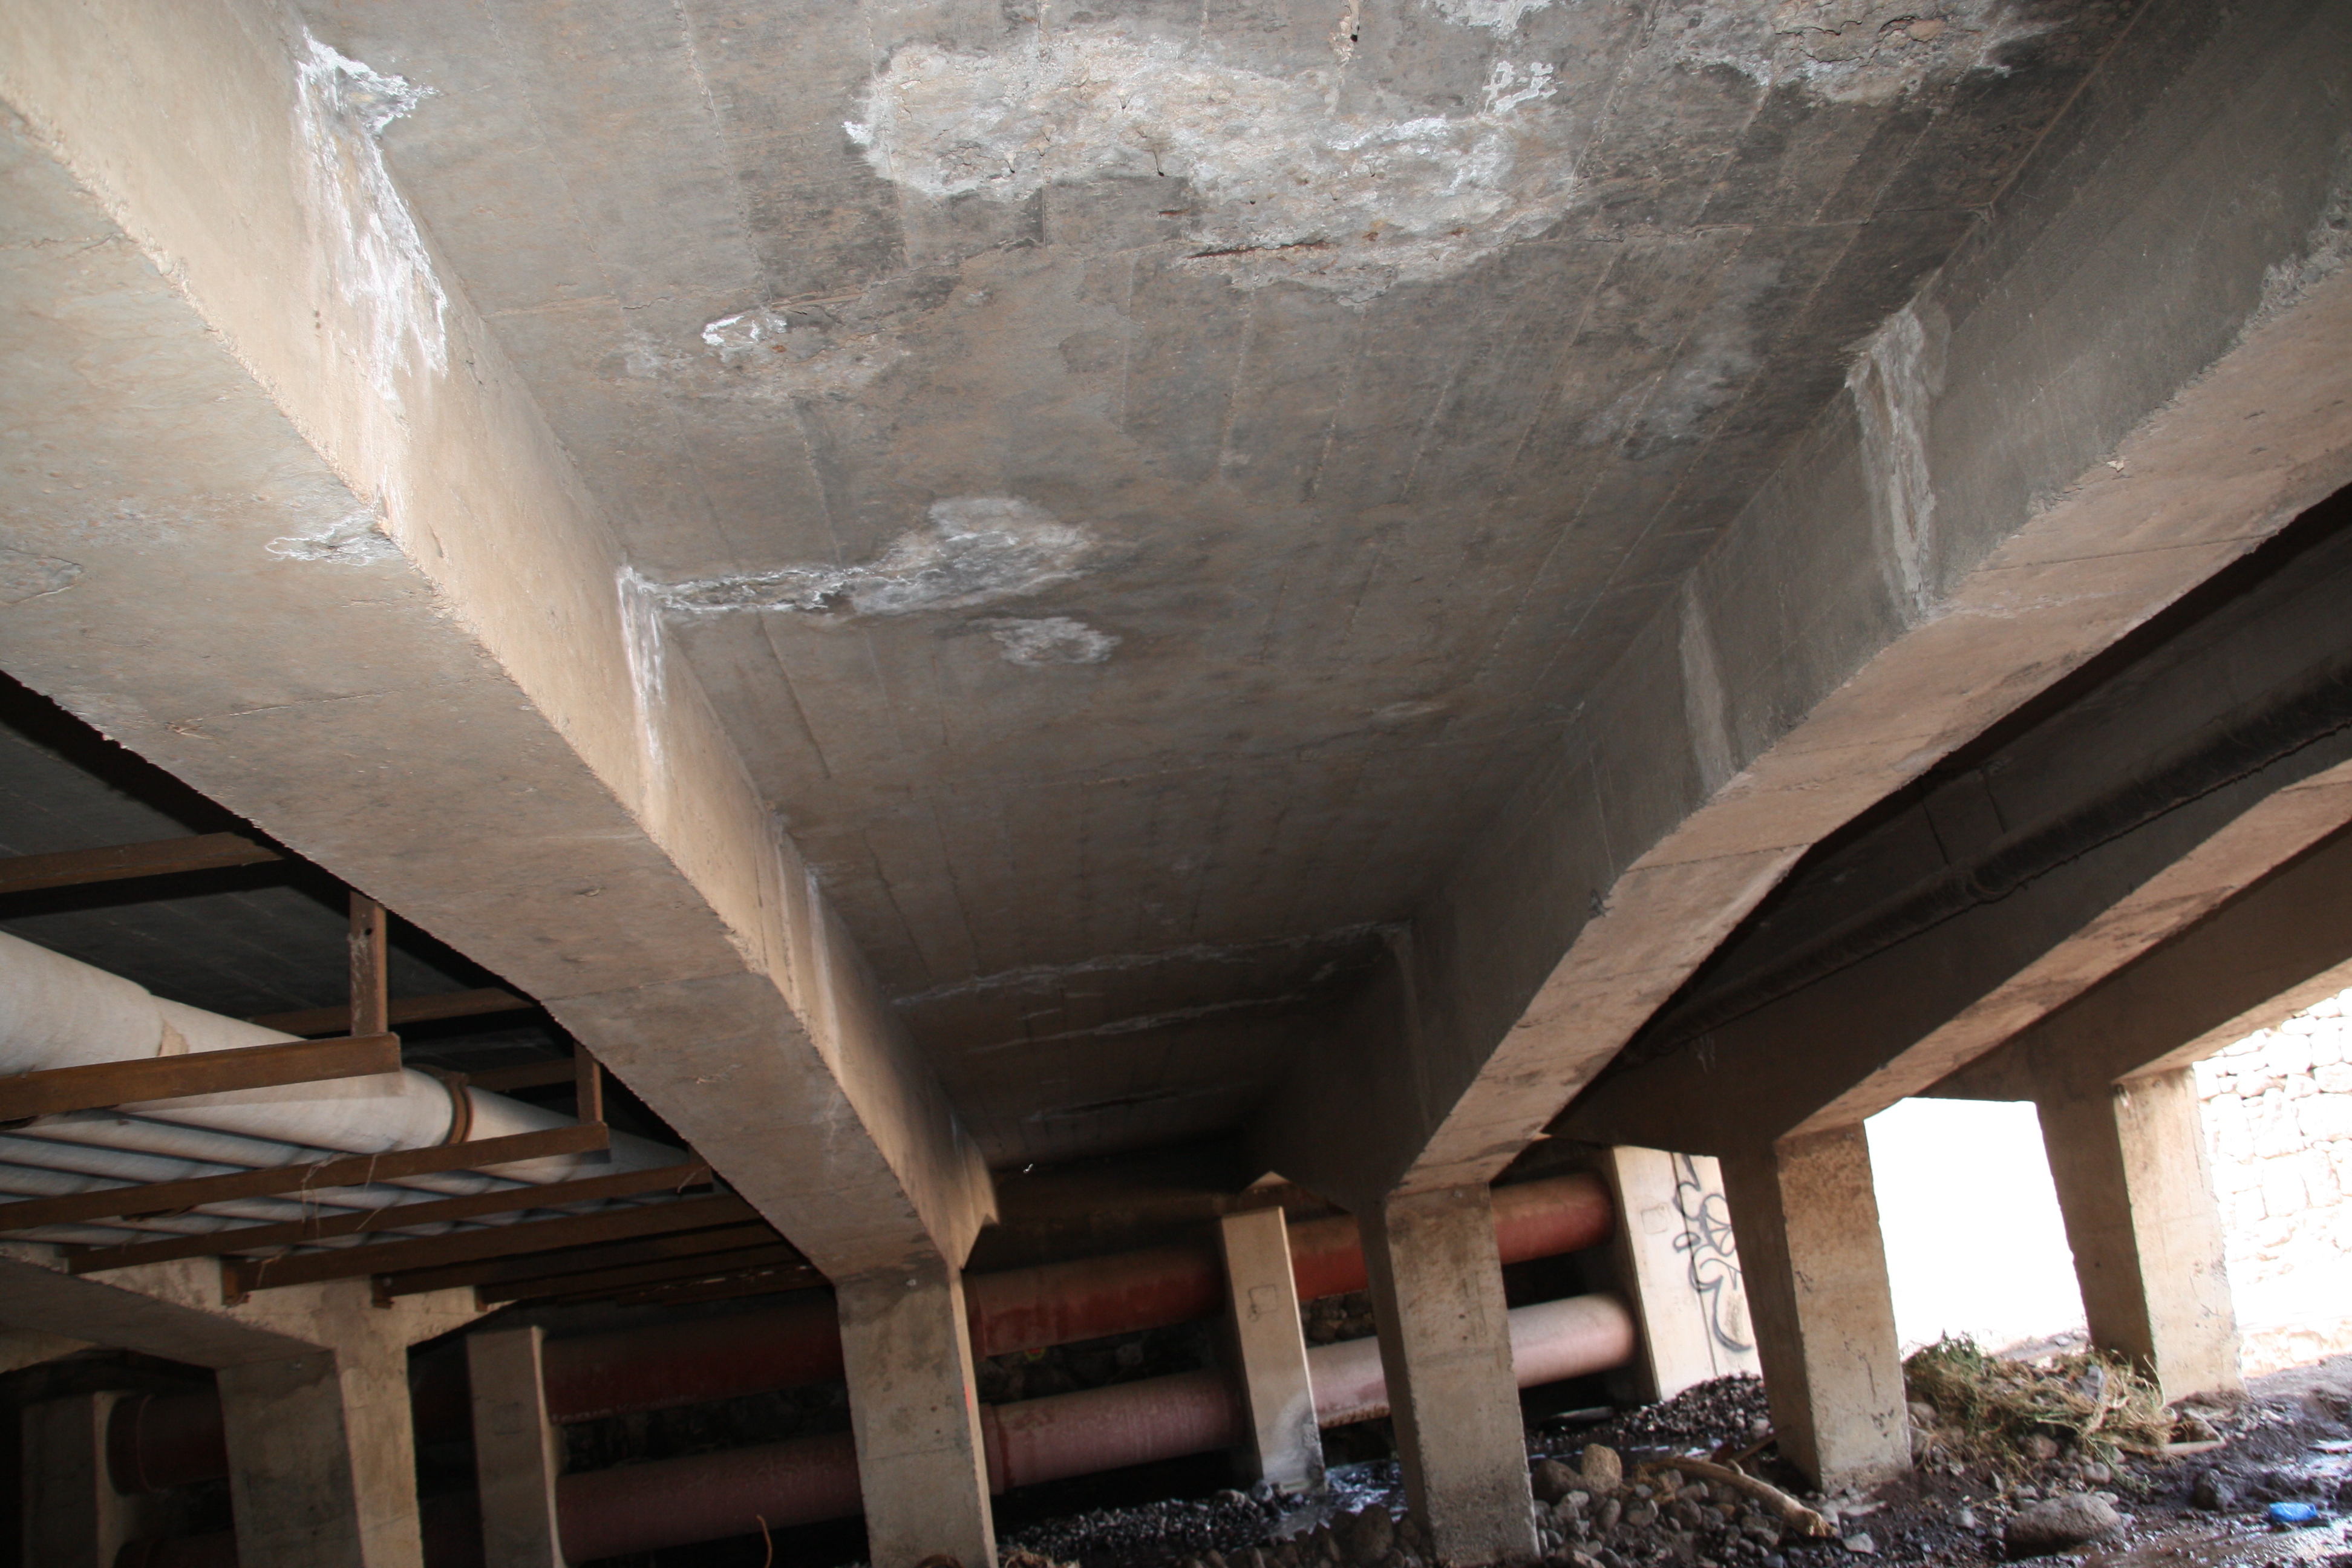 (Español) Redacción de proyecto “Sustitución y reparación de los puentes existentes sobre el barranco de Santos entre Bravo Murillo y la avenida Marítima”.